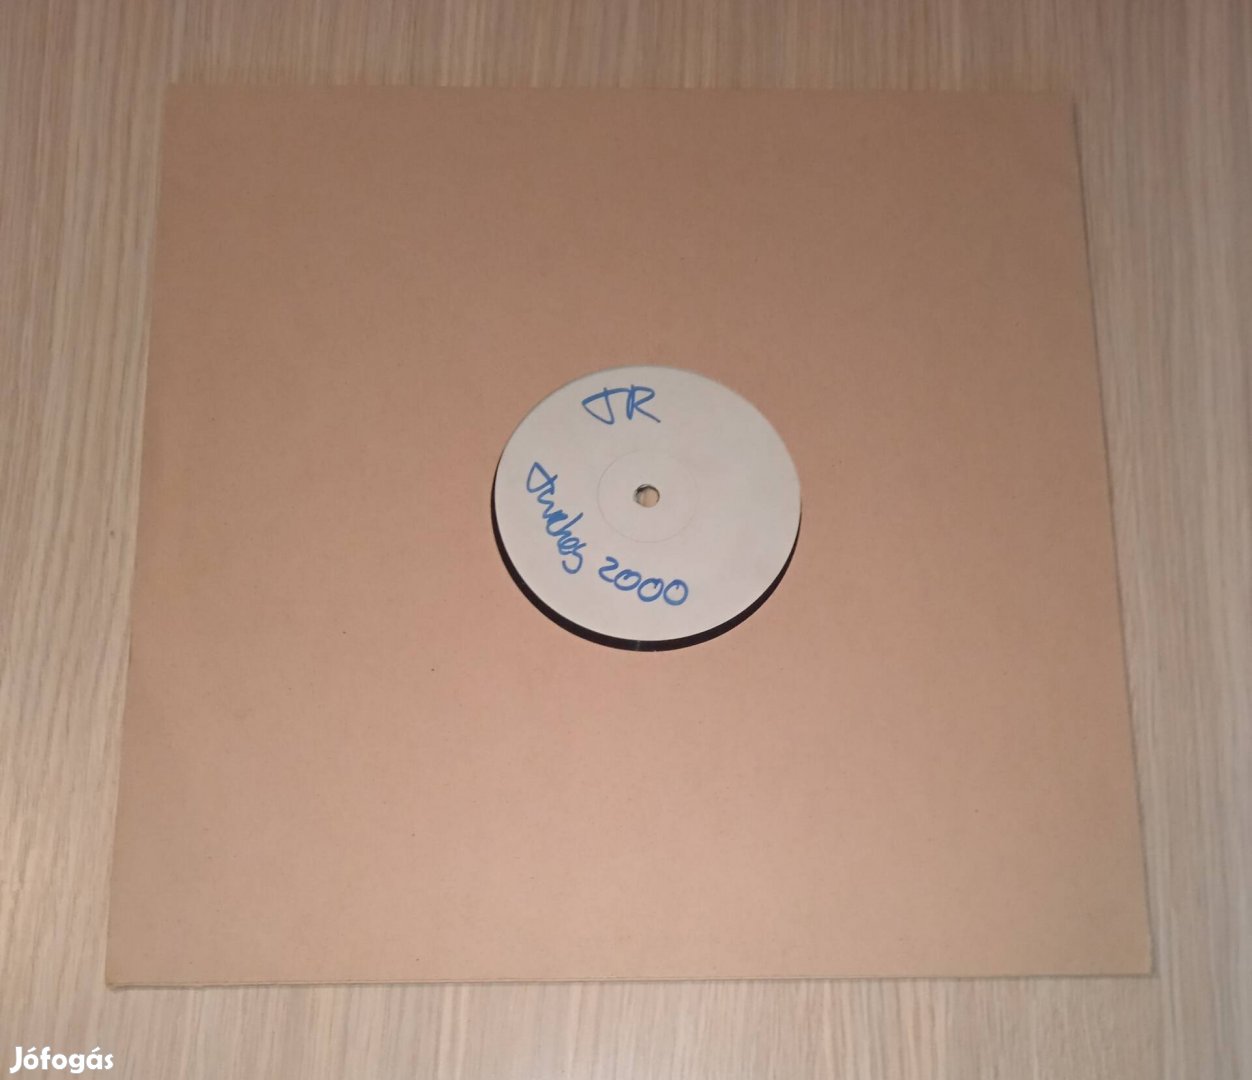 Three Drives On A Vinyl - Turkey 2000 (Vinyl,1999)